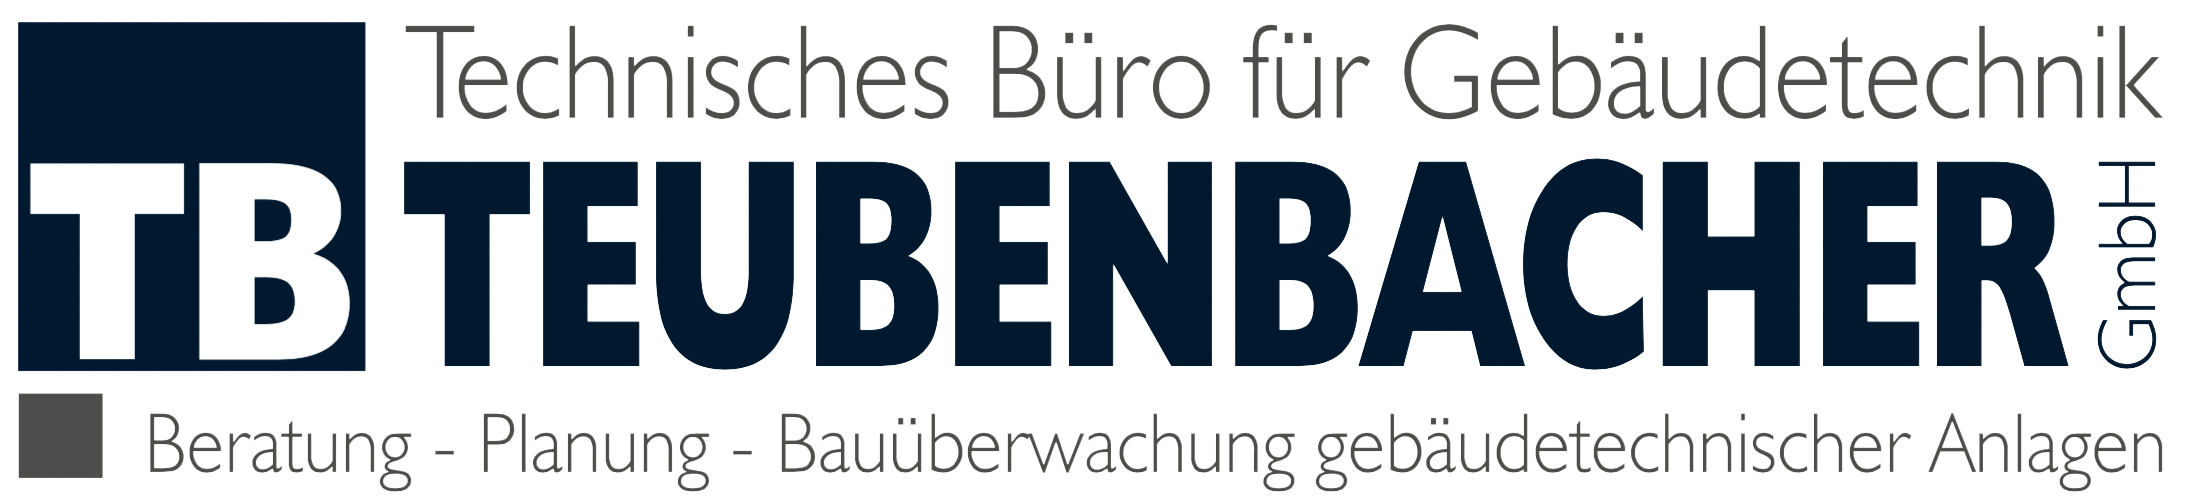 TB Teubenbacher GmbH